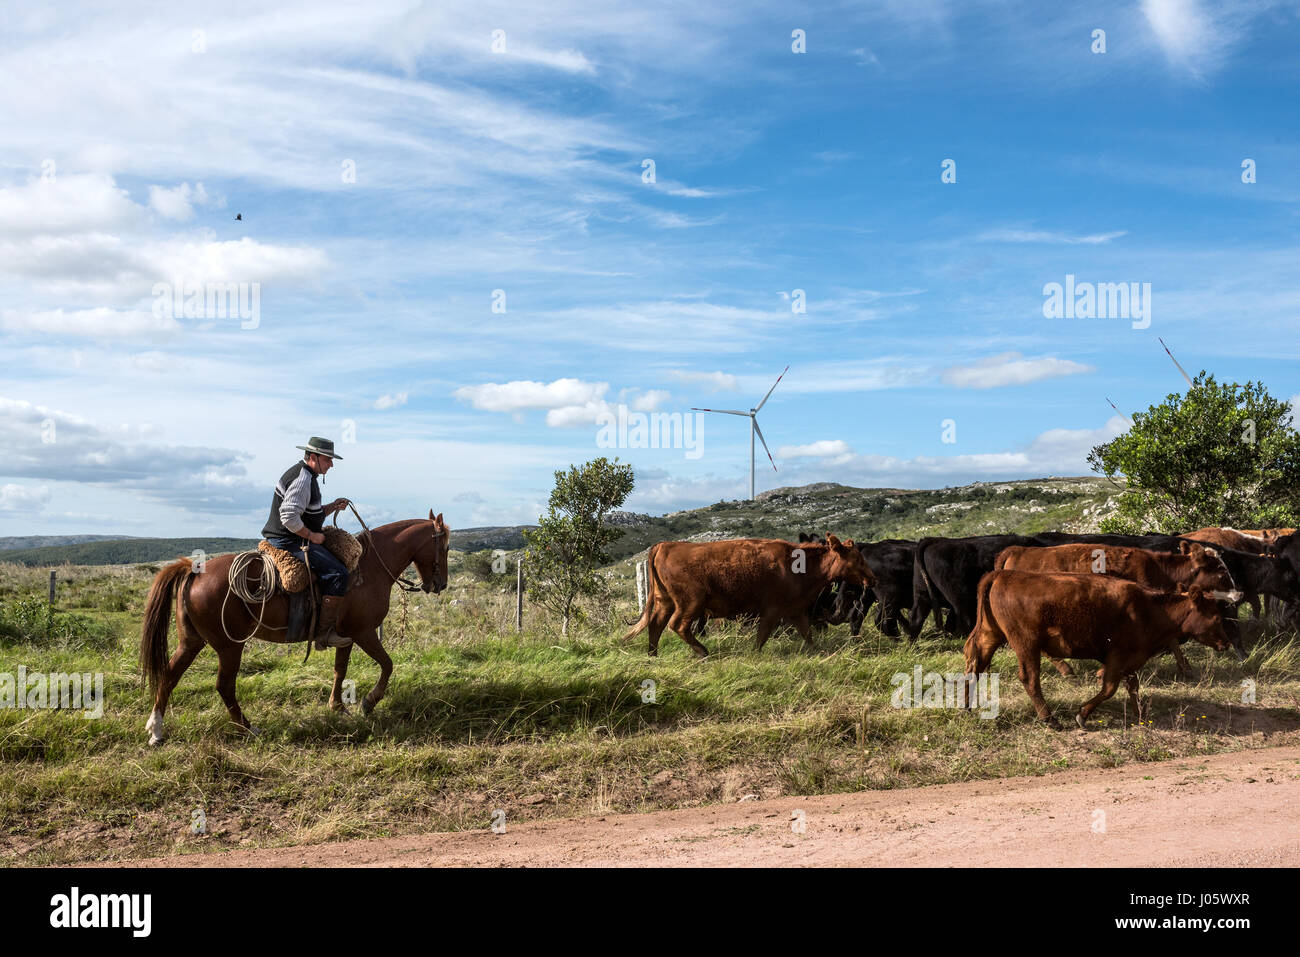 Aigua, Uruguay: Marth 31, 2017 - Gaucho herding cows near windmills on the Cerro Catedral in the Maldonado Department Stock Photo